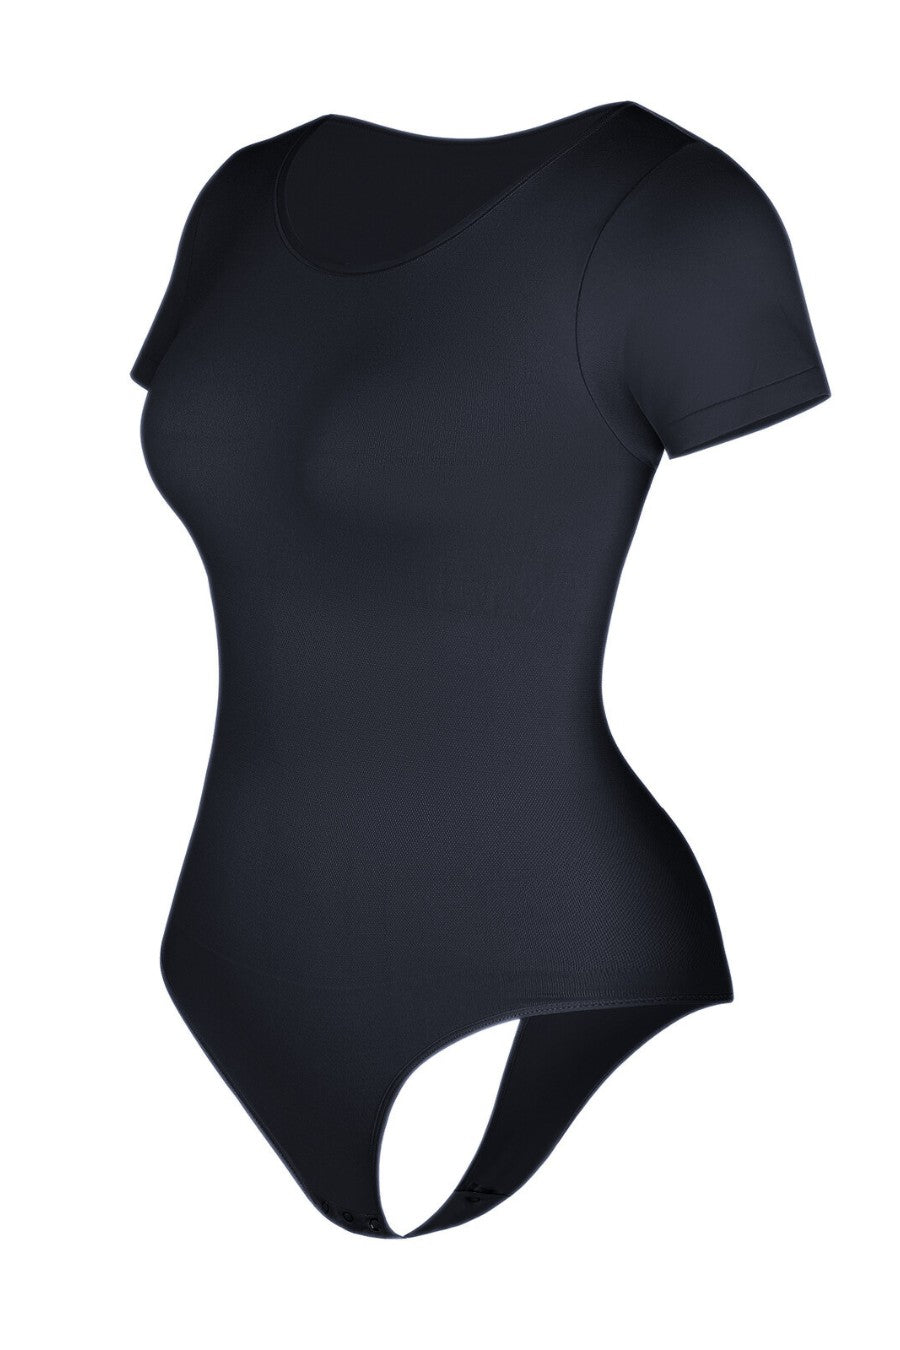 Emma Shaping Bodysuit - Black Contour Clothing